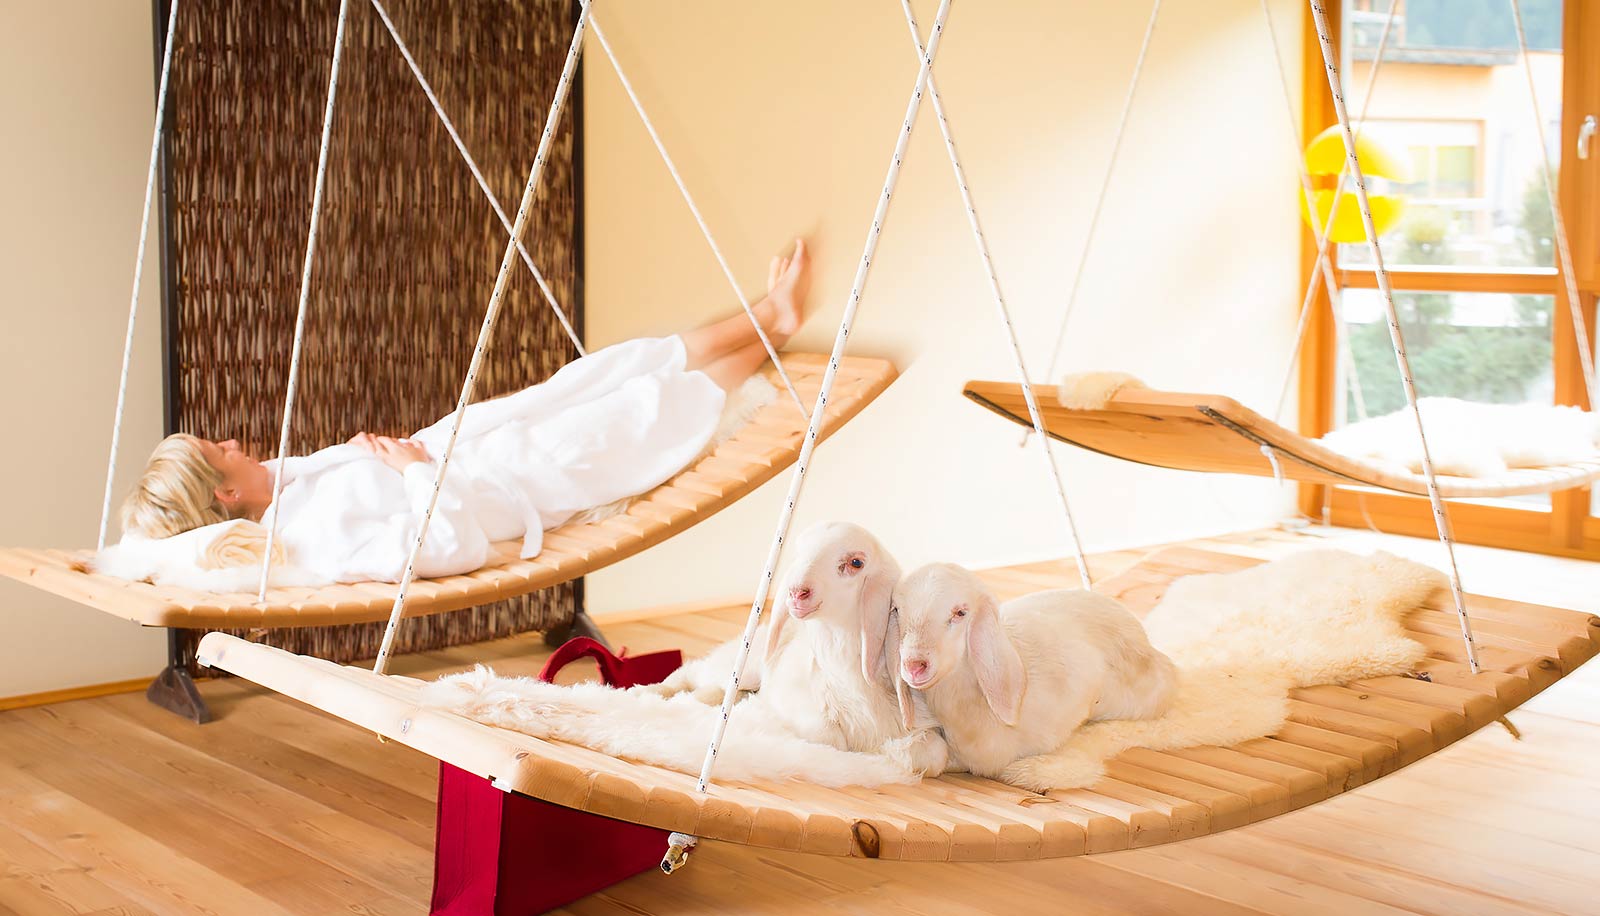 Lettini di legno sospesi all'Arosea Life Balance Hotel in Val d'Ultimo in cui riposano una donna e due agnelli